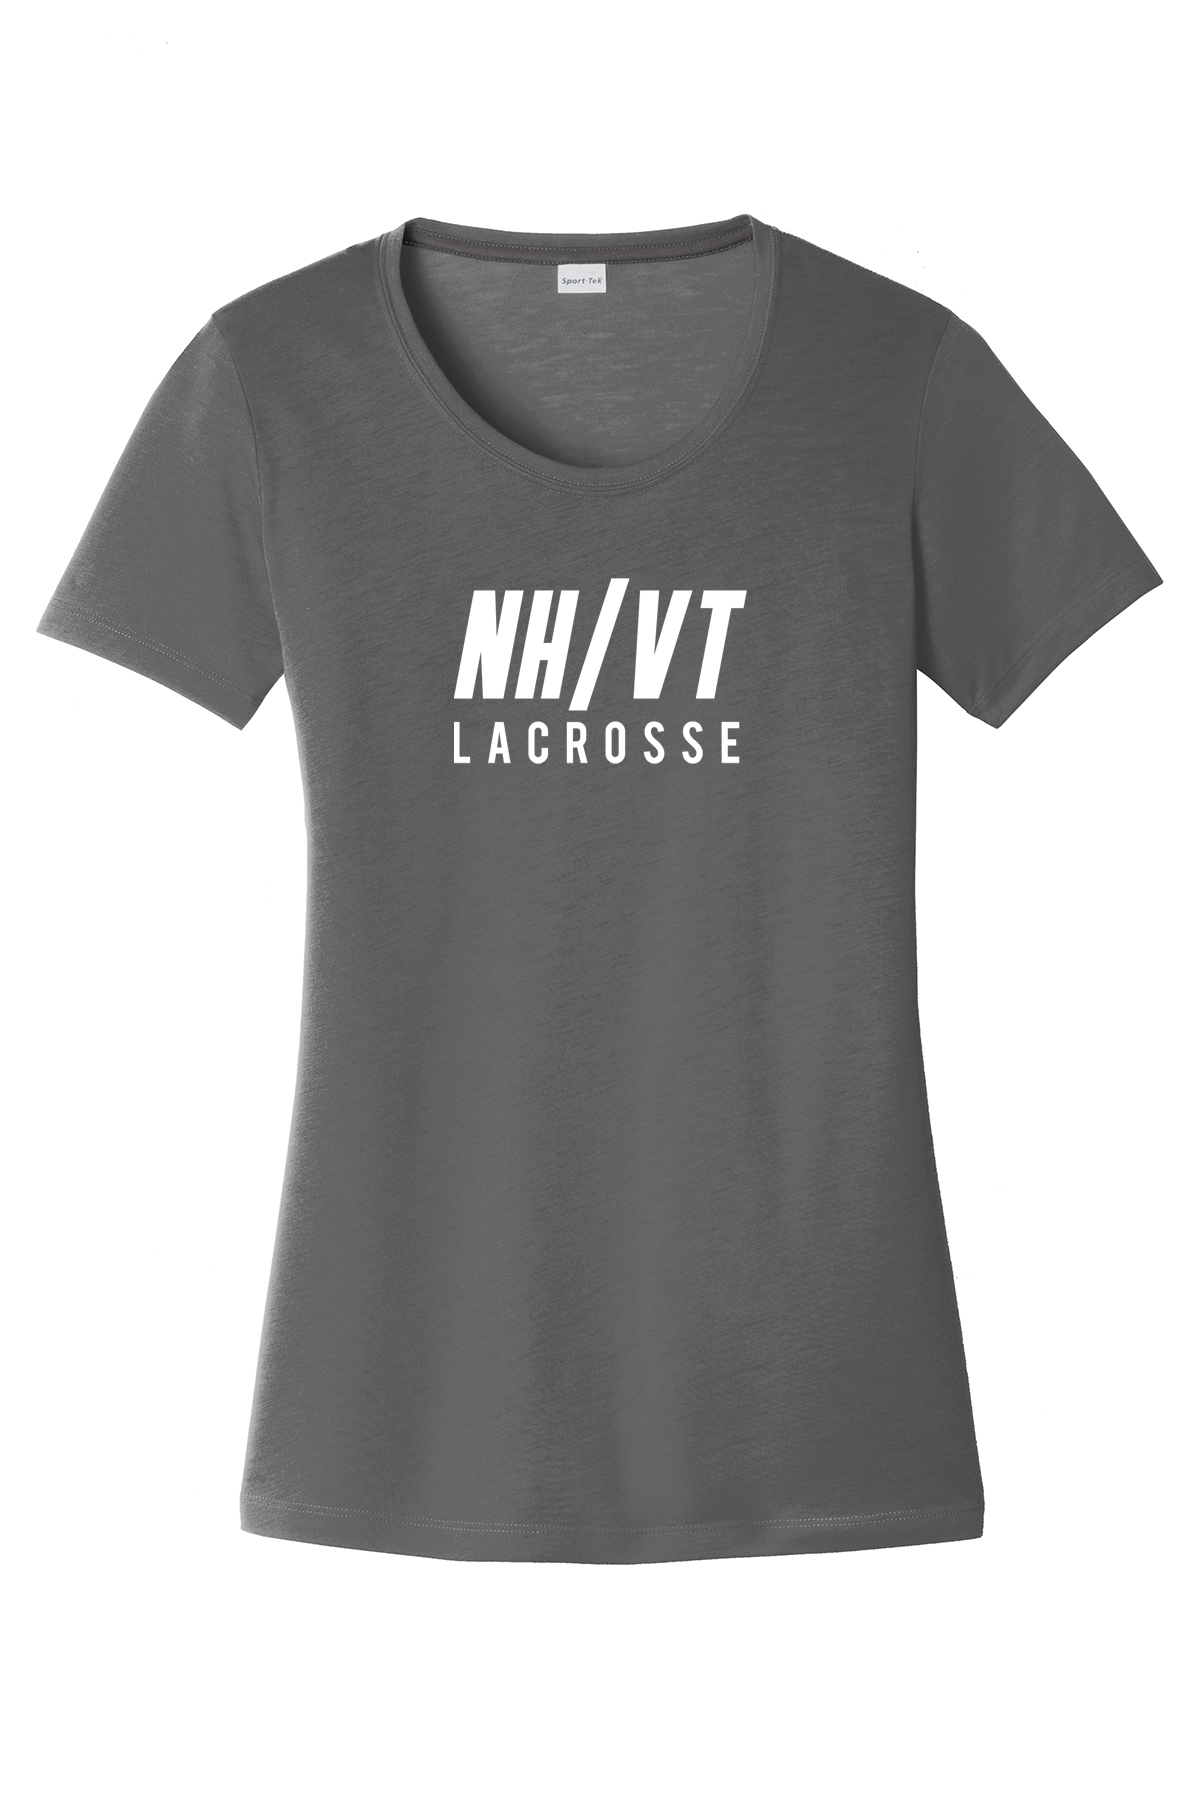 NH/VT Women's CottonTouch Performance T-Shirt